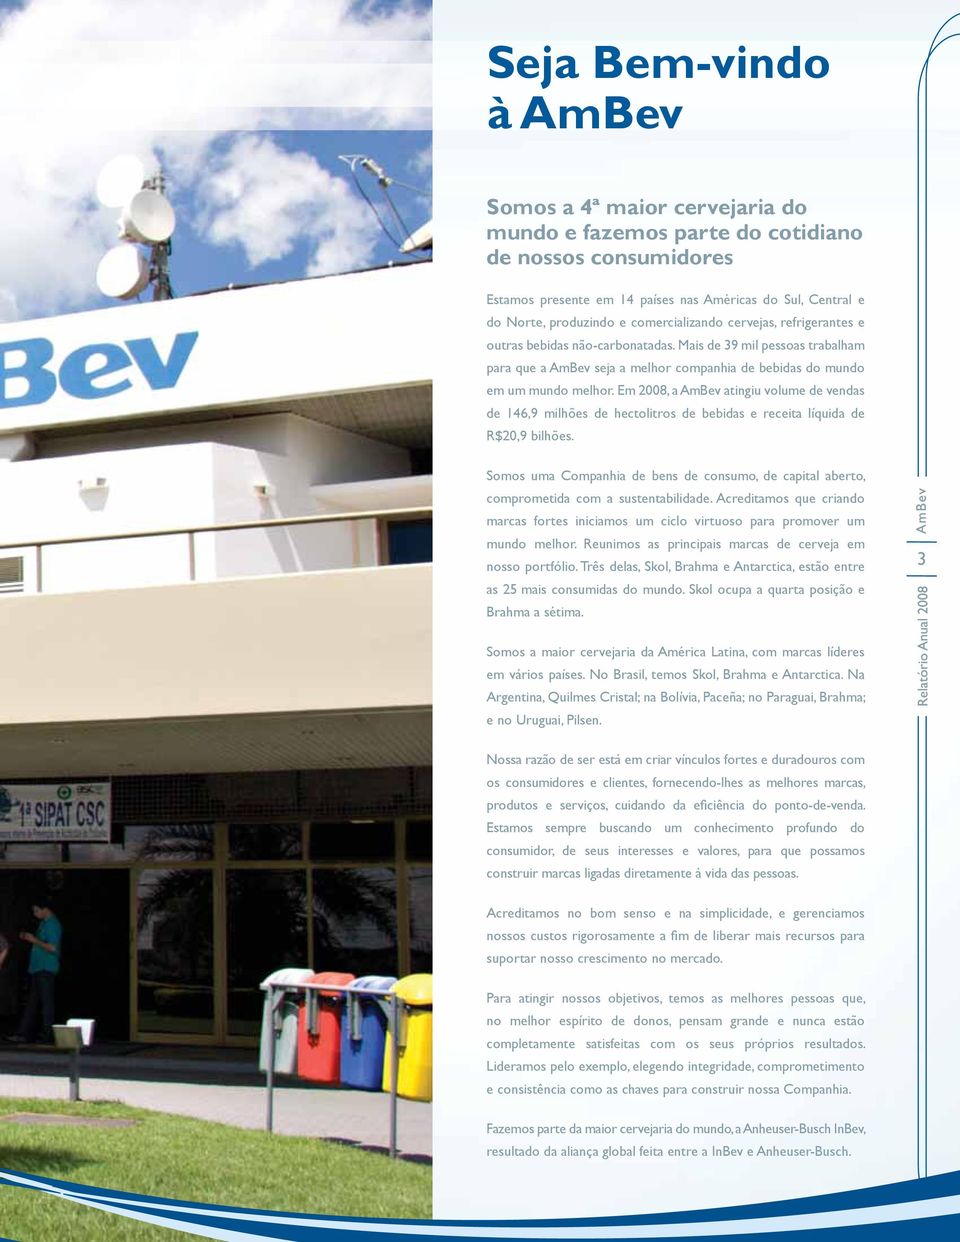 Em 2008, a AmBev atingiu volume de vendas de 146,9 milhões de hectolitros de bebidas e receita líquida de R$20,9 bilhões.